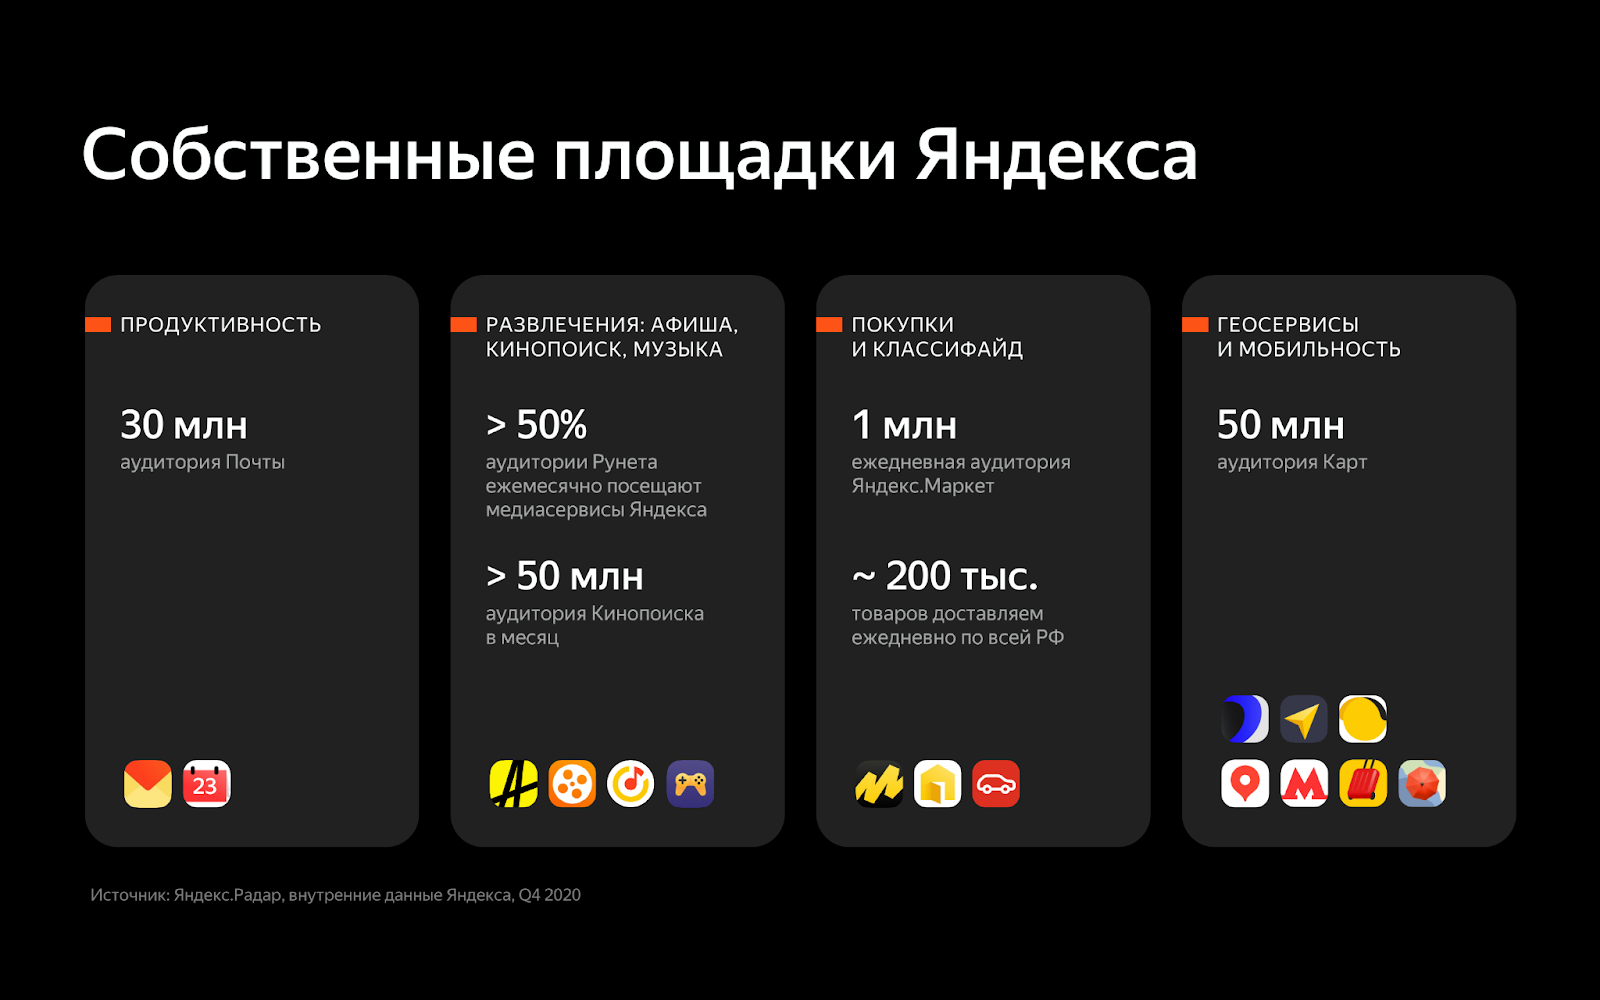 Собственные площадки Яндекса